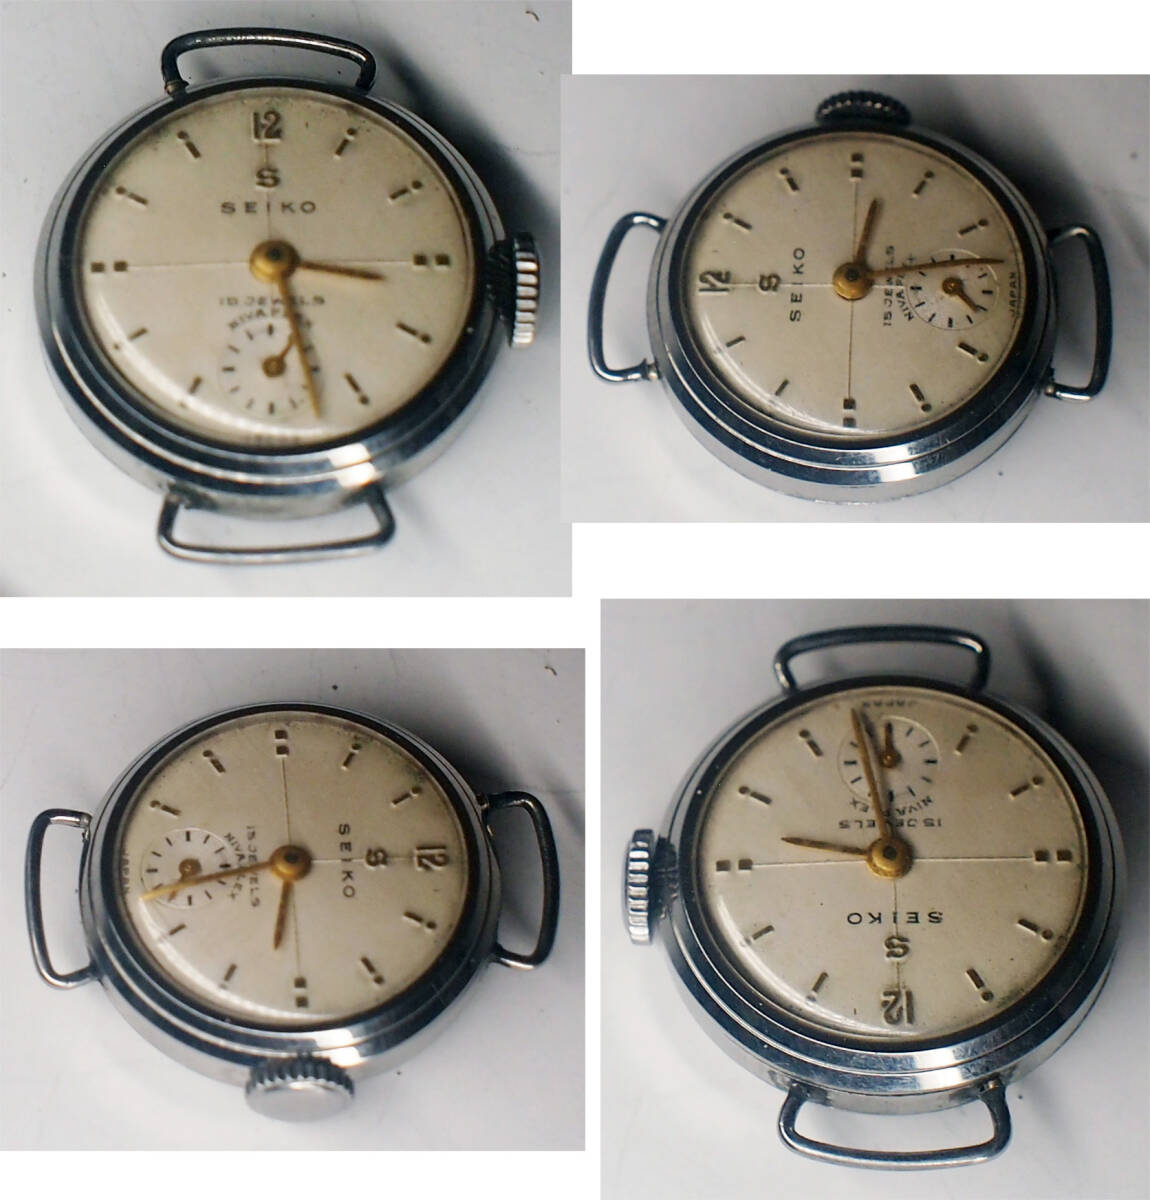 ¶ SEIKO　スモールセコンド　15石　最新でも60年以上前の腕時計　稼働美品　詳細不明　¶　_画像2